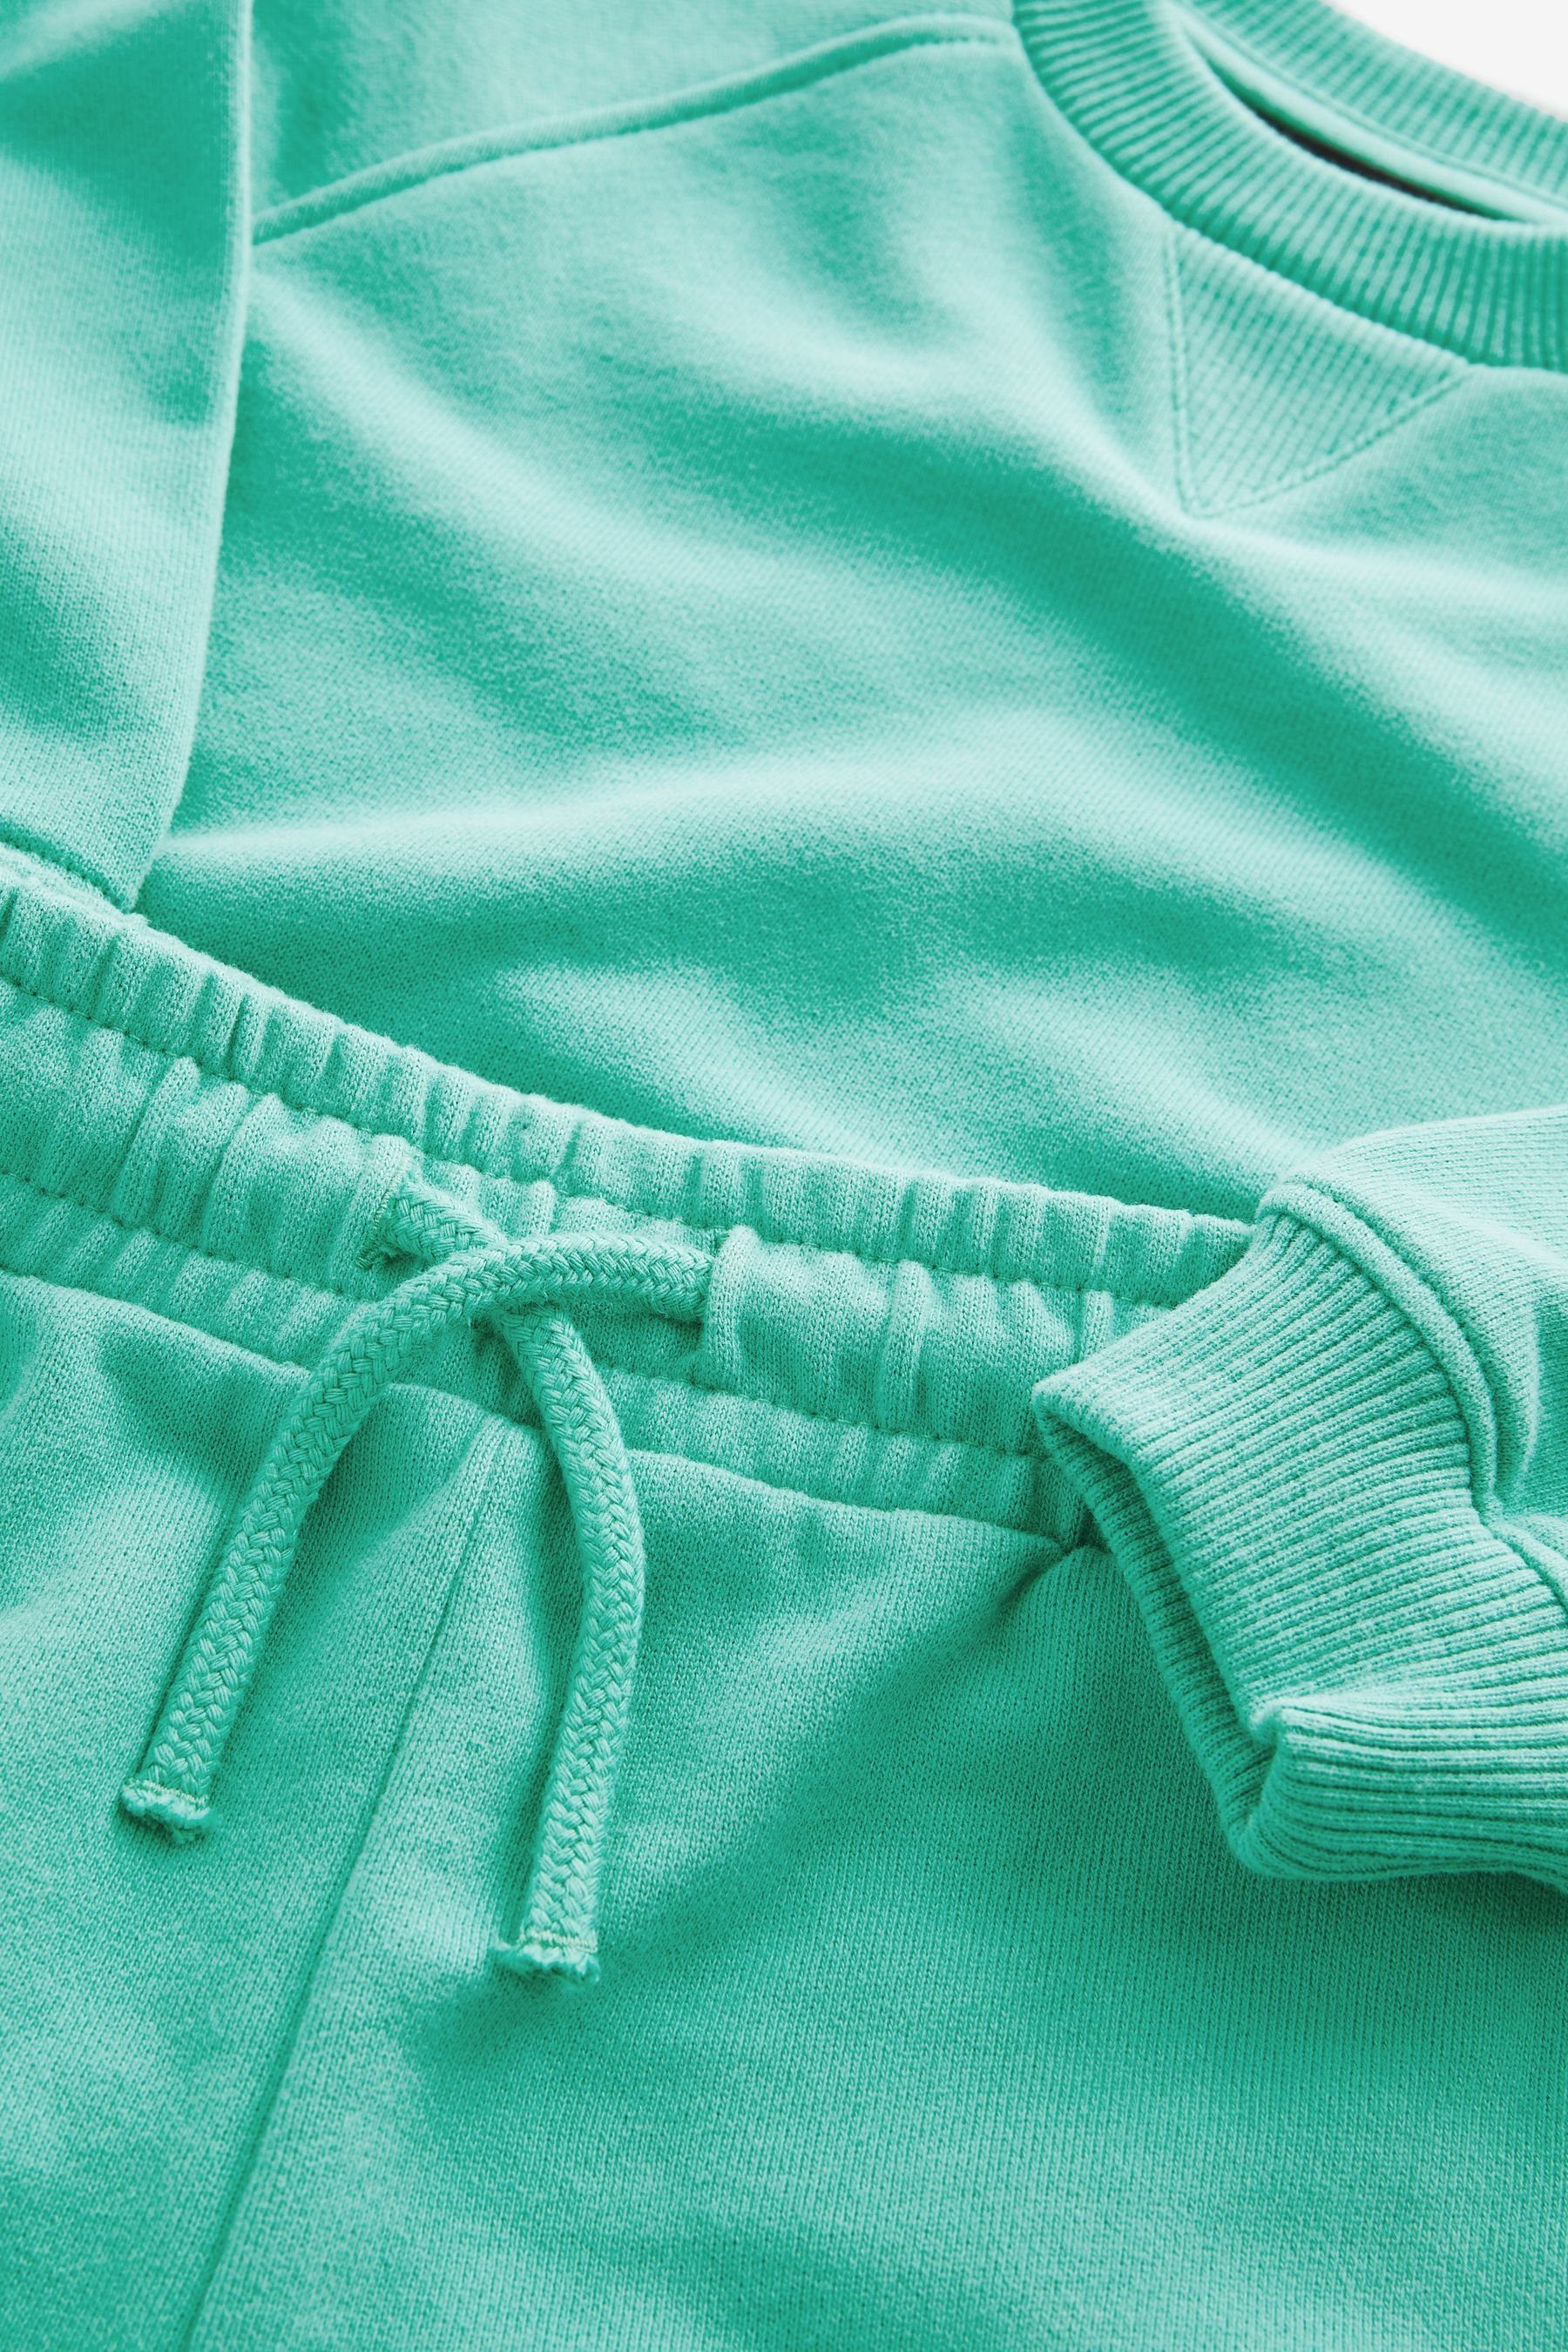 Next Sweatanzug Oversized-Sweatshirt und Shorts (2-tlg) Mint Green im Set